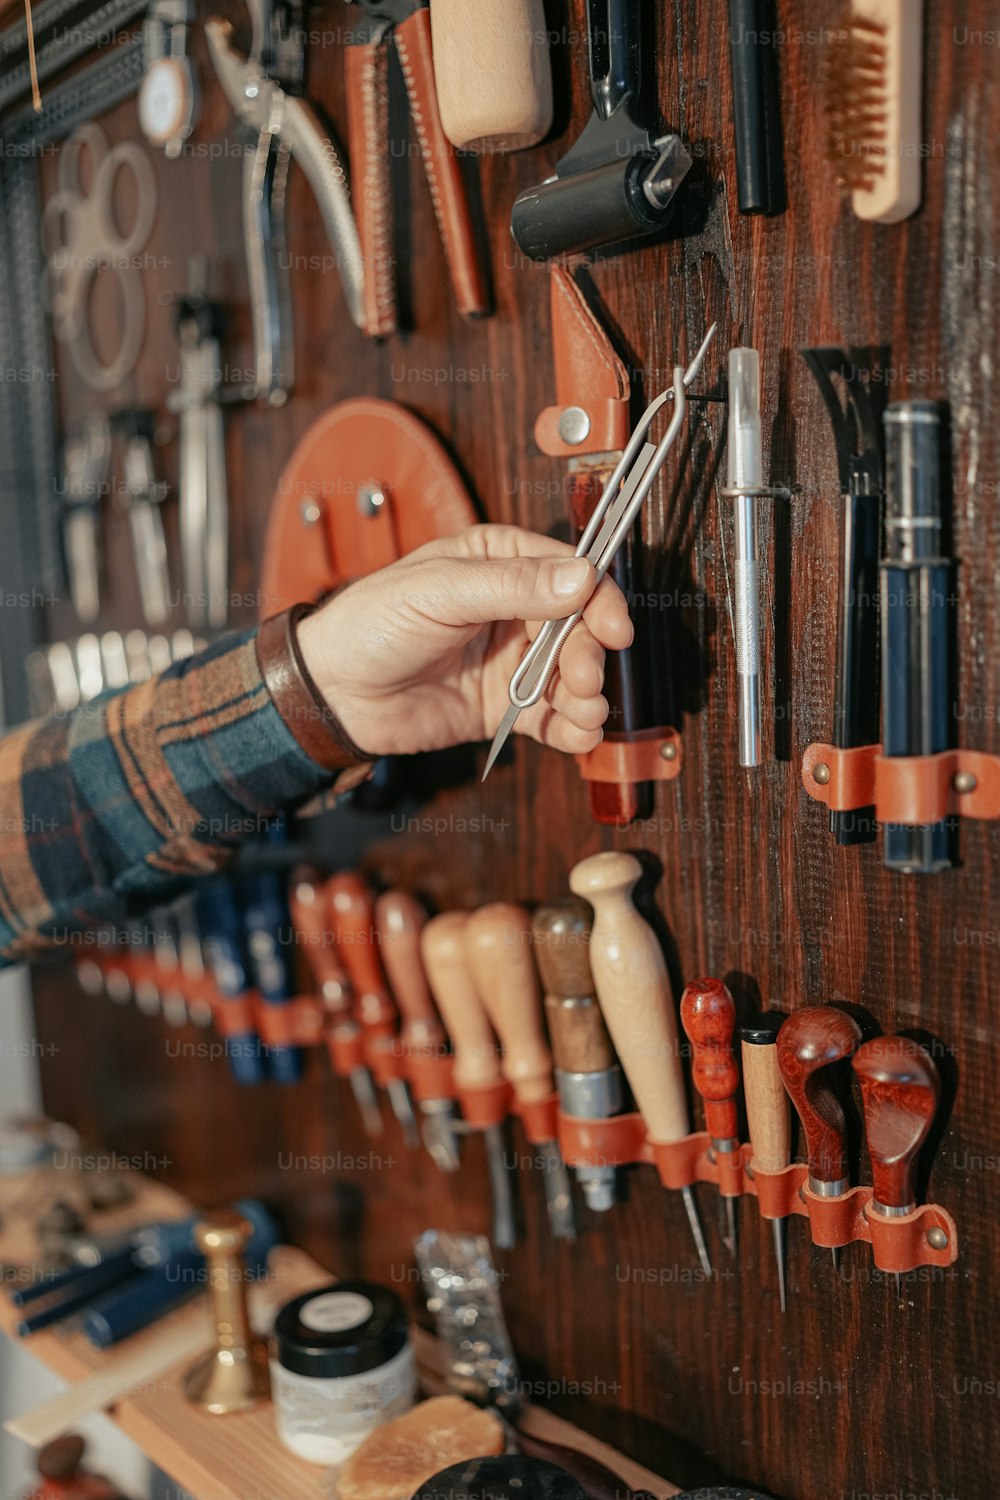 Una persona sosteniendo un par de tijeras frente a una pared de herramientas